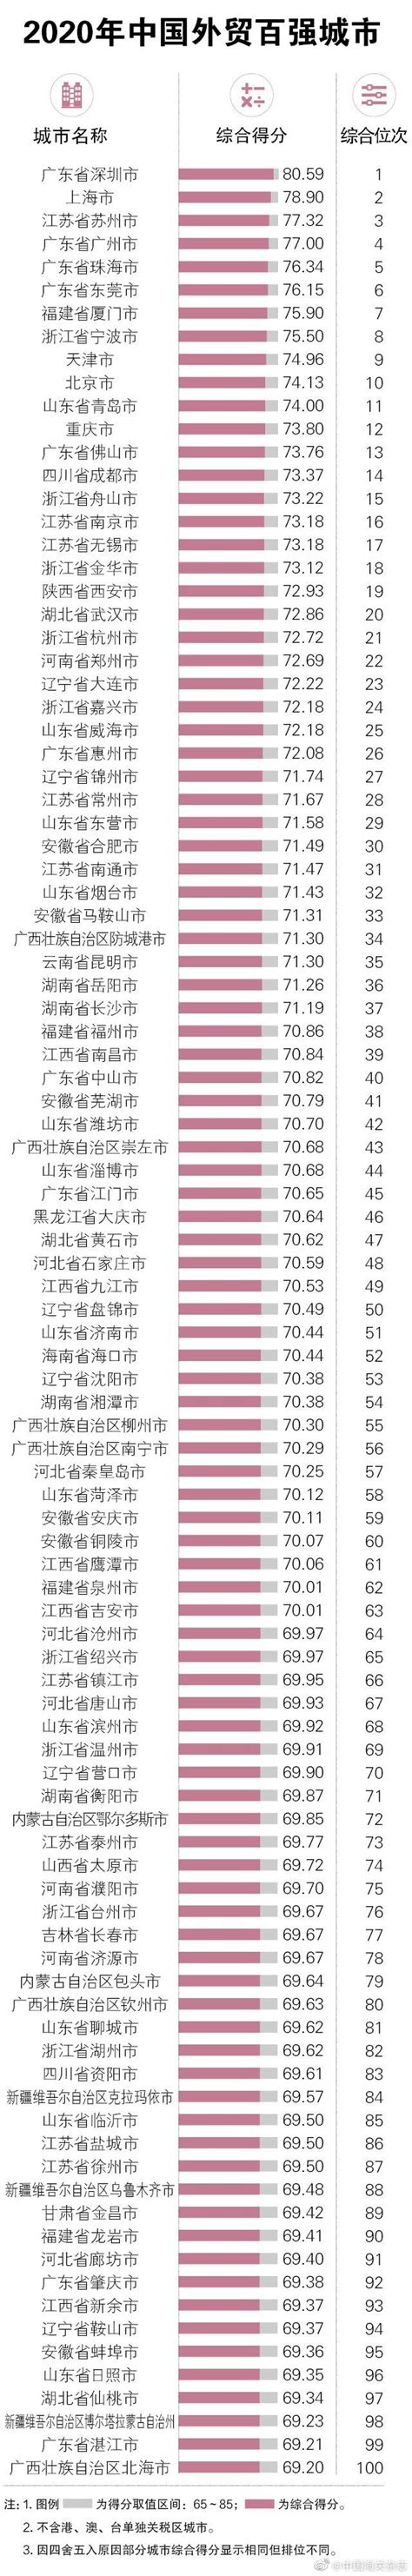 超越成都、南京！佛山位居2020中国外贸竞争力榜第13